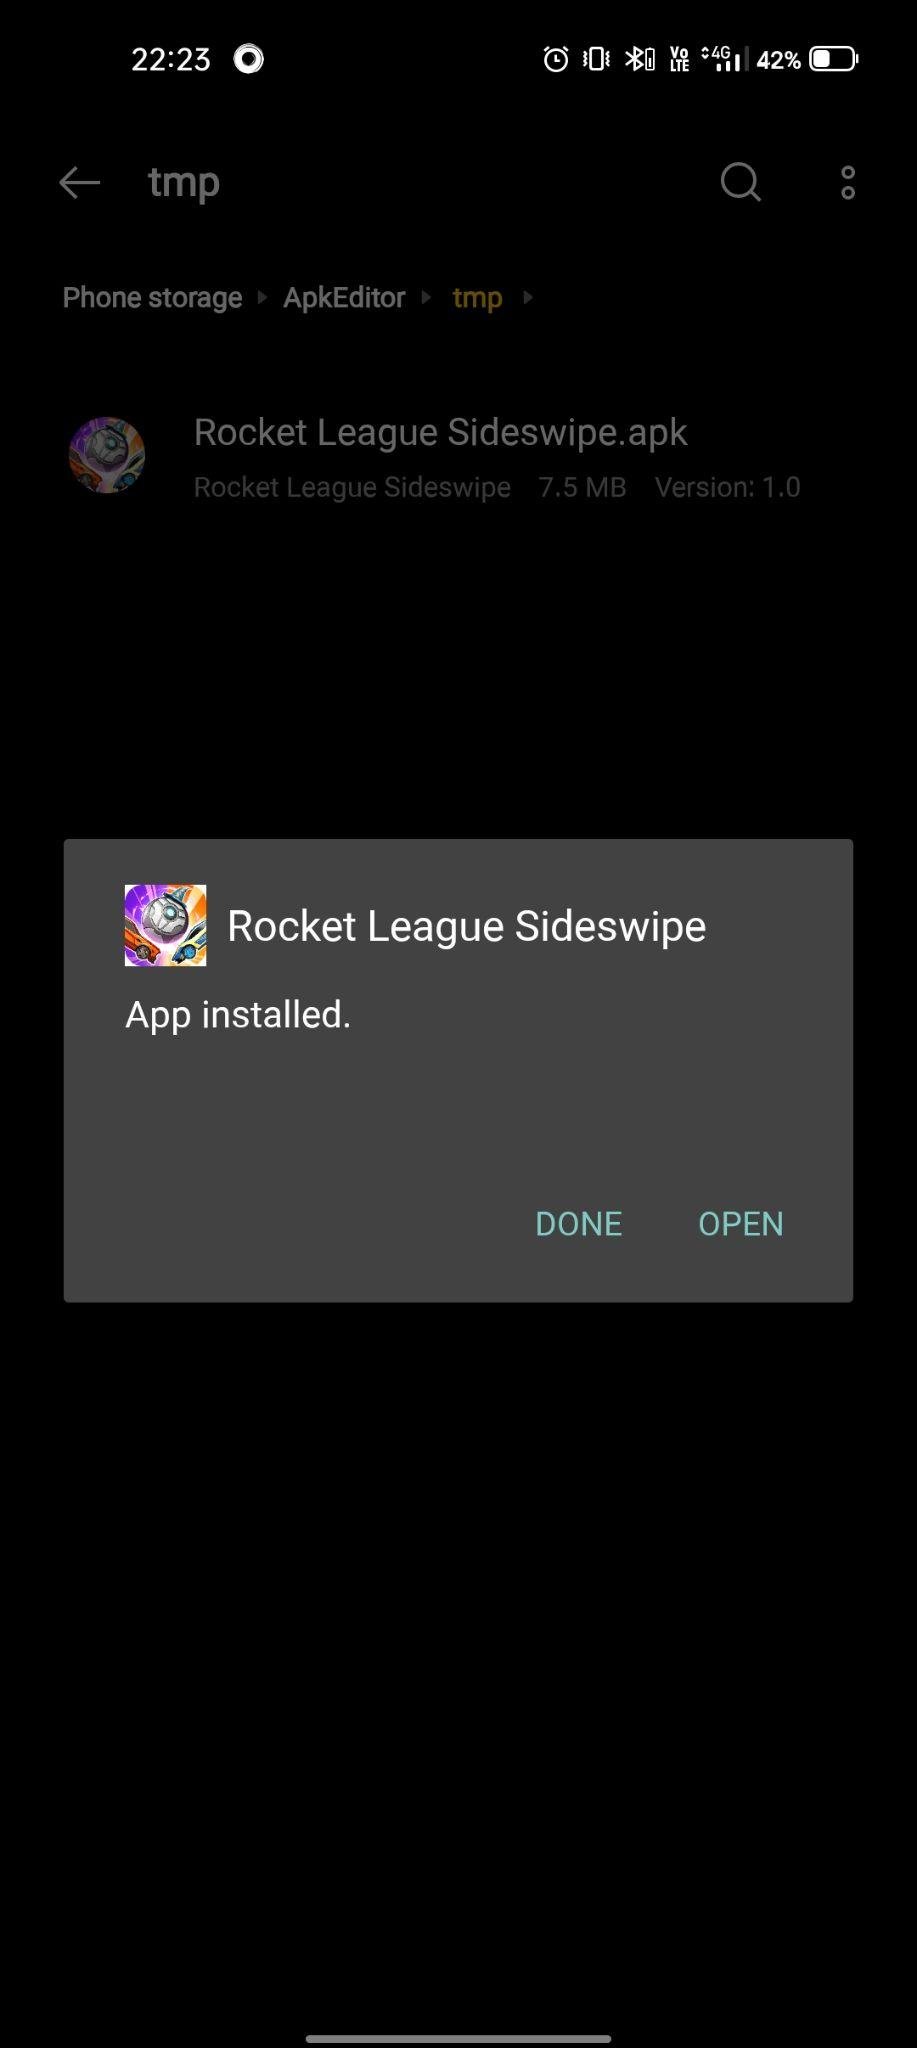 Rocket League Sideswipe apk installed